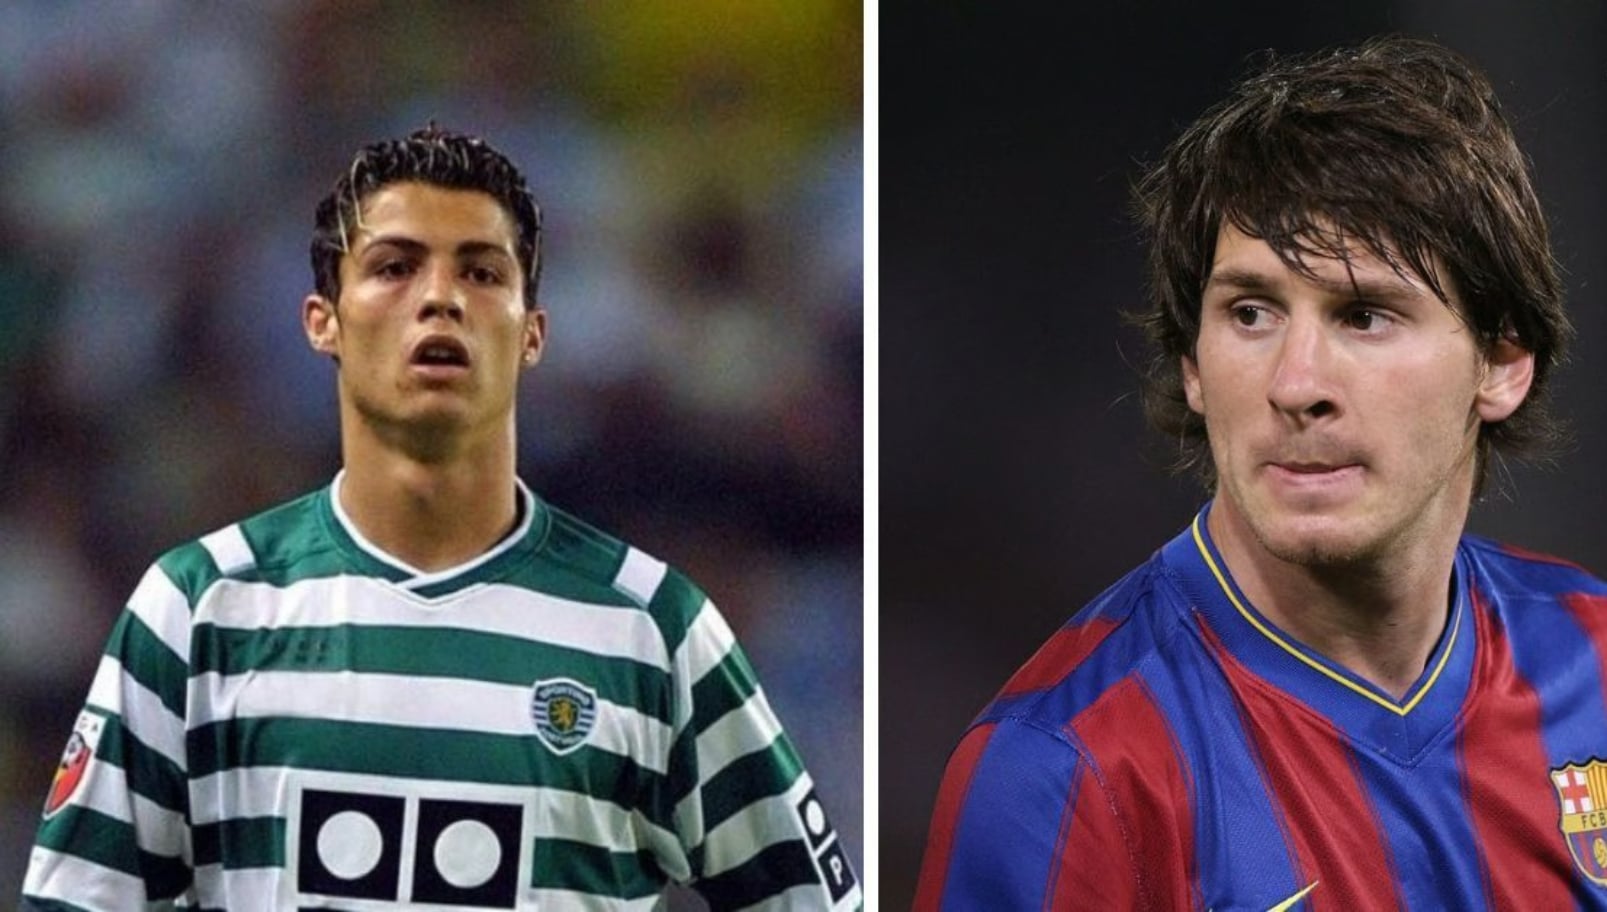 Qu’ont acheté Ronaldo et Messi avec leur premier salaire ? Un rapport prétend faire la lumière sur les choix contrastés des deux stars.